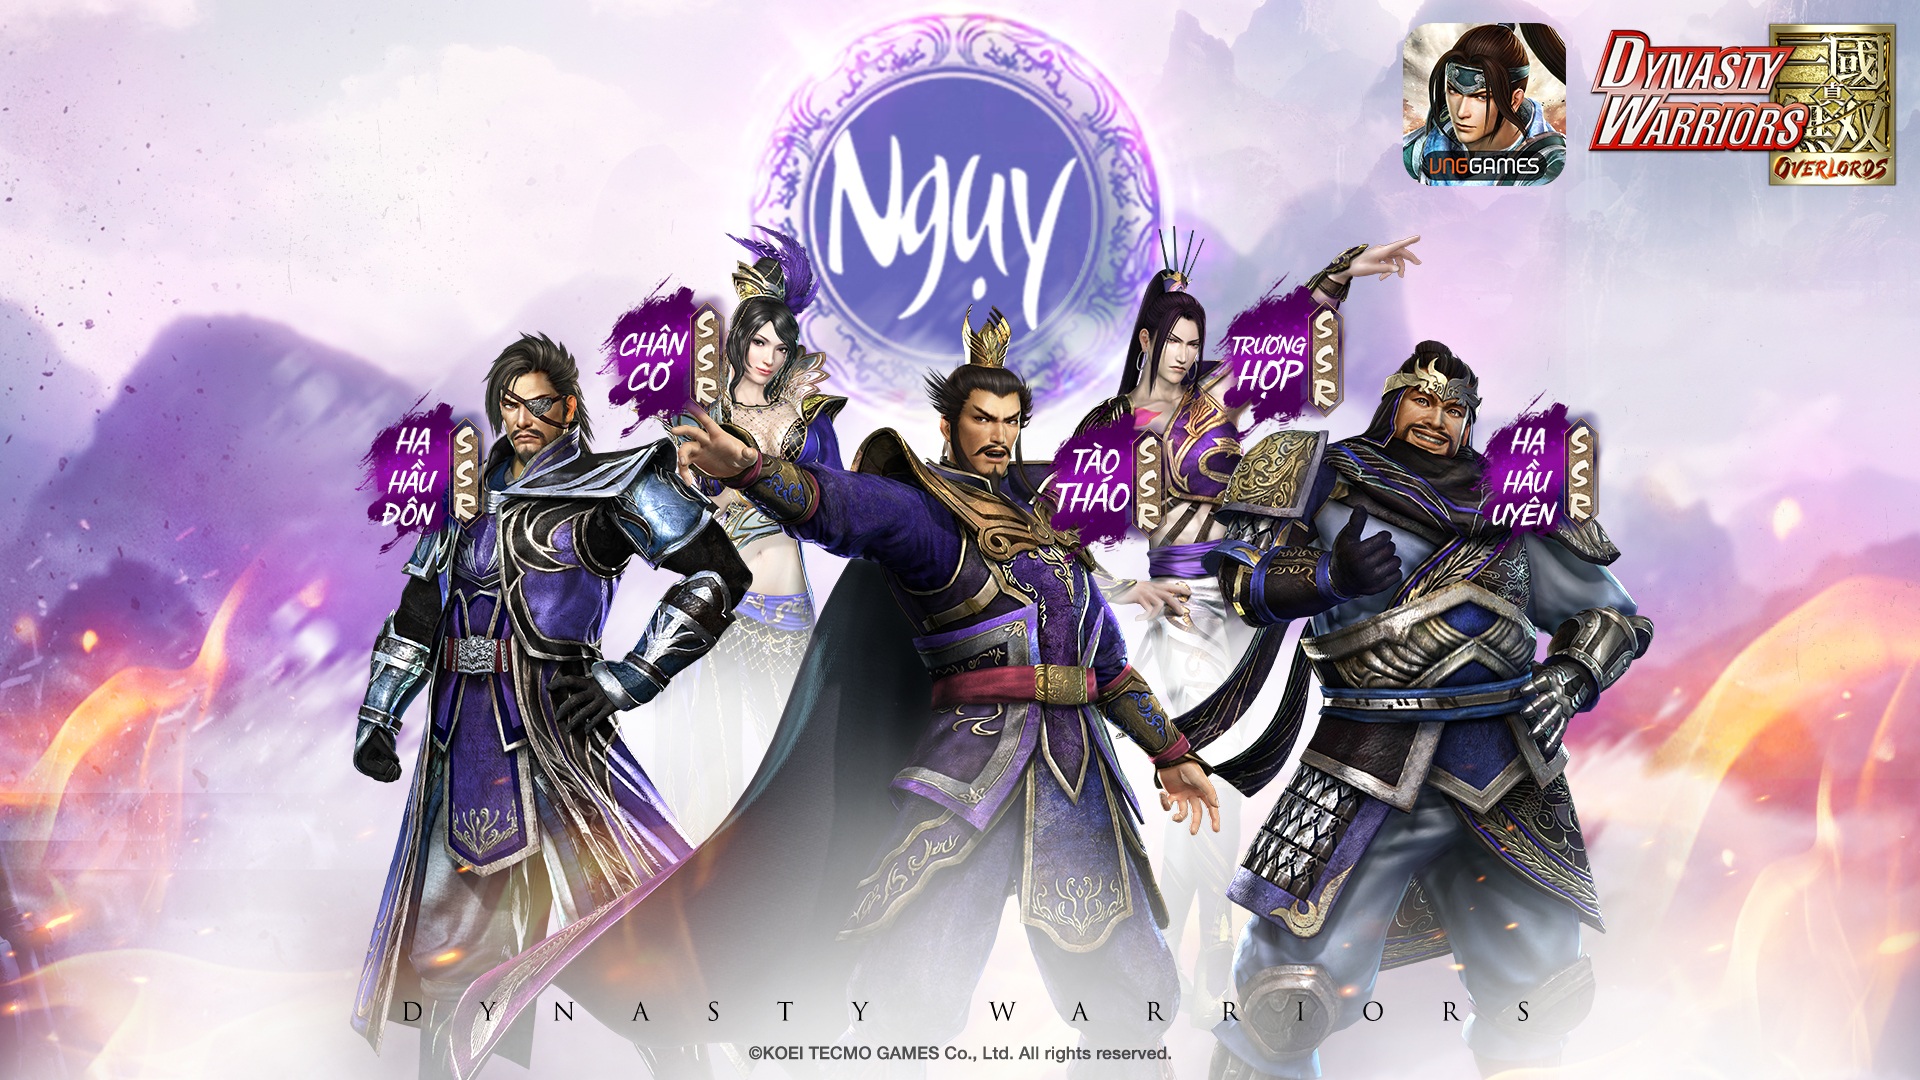 Dynasty Warriors: Overlords tung hình ảnh VIệt hóa, mở đăng ký trước